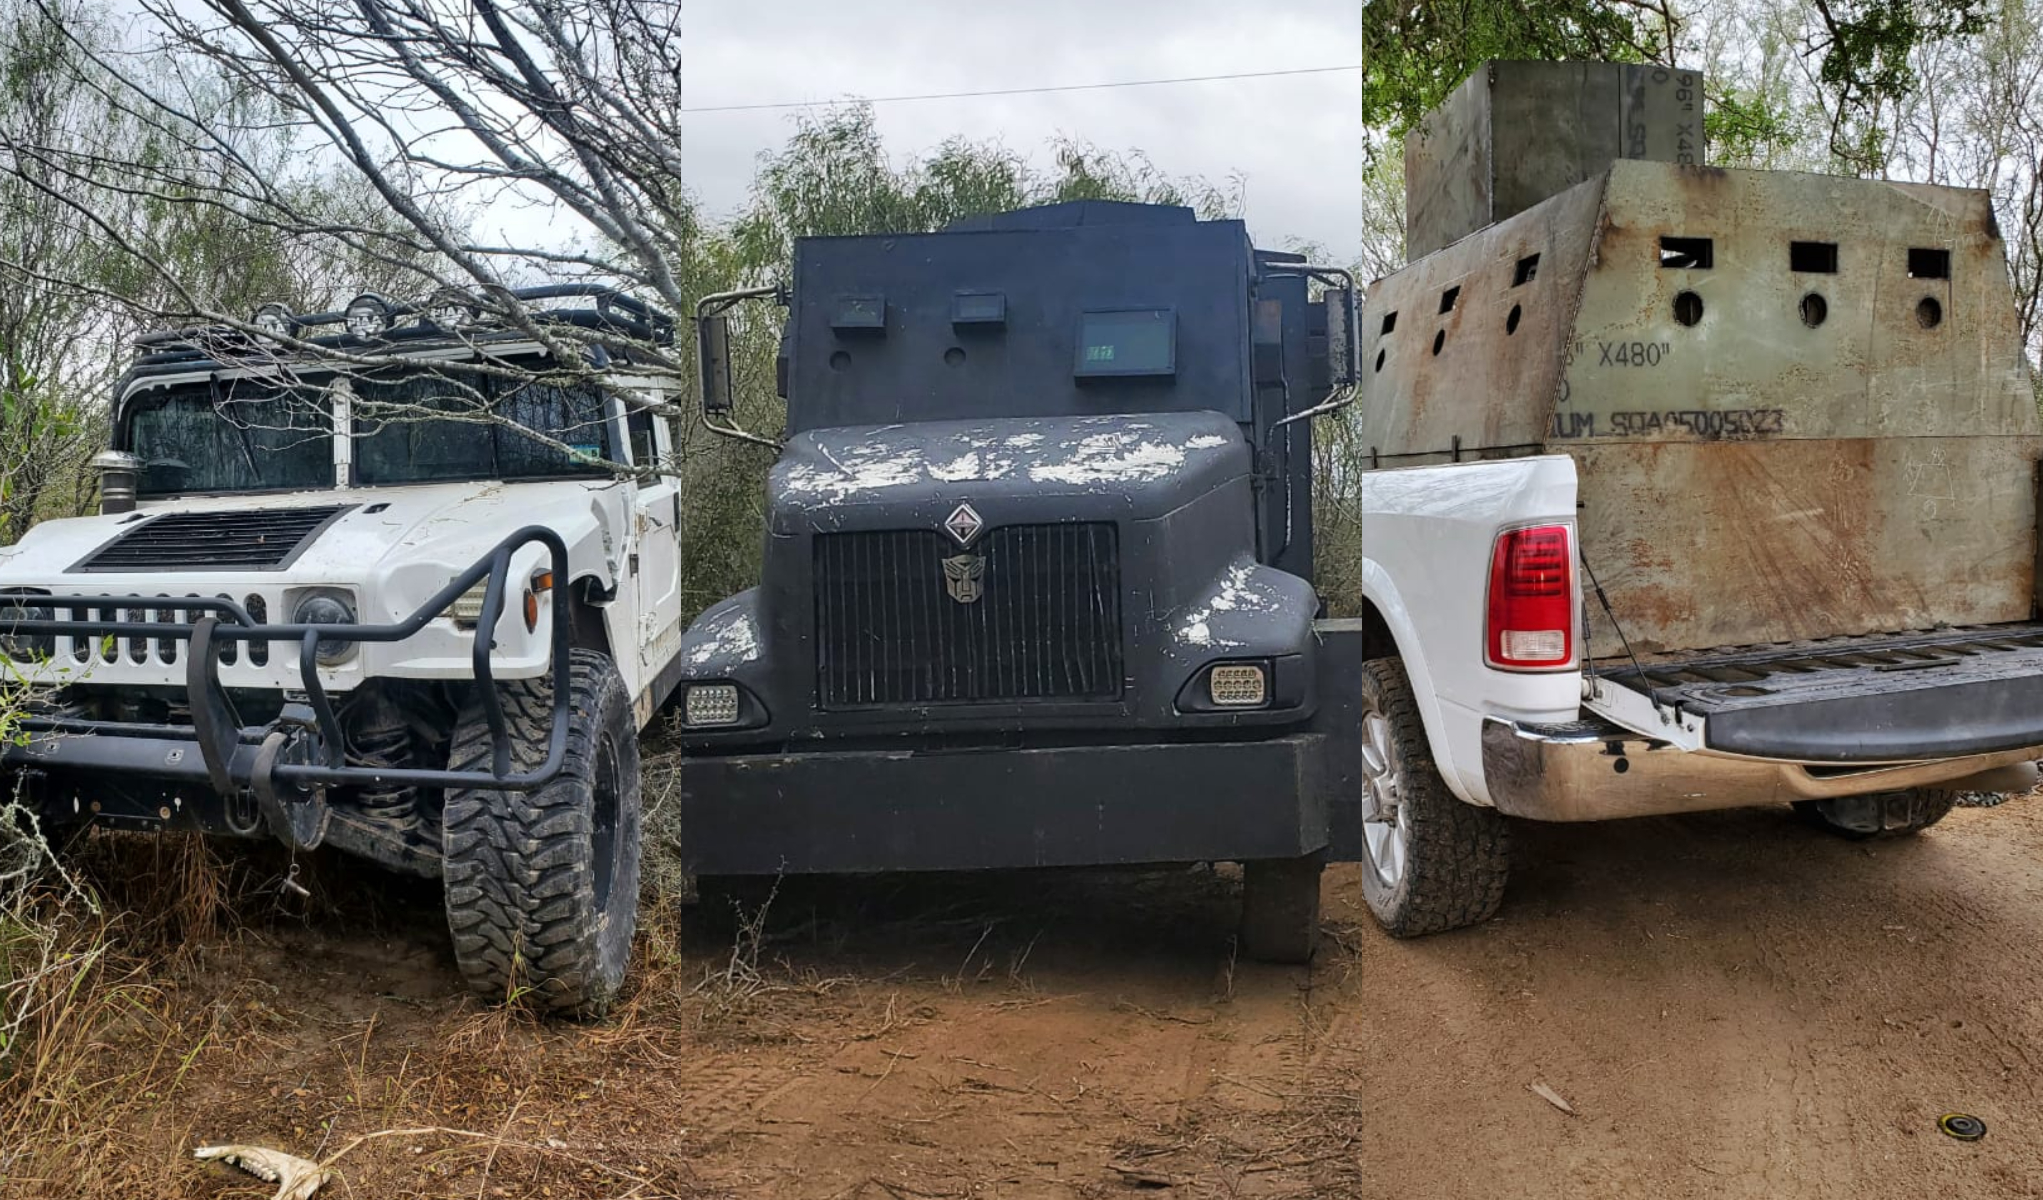 Ocultos entre la maleza: policías de Tamaulipas decomisaron camiones “monstruo” al Cártel del Golfo en Reynosa